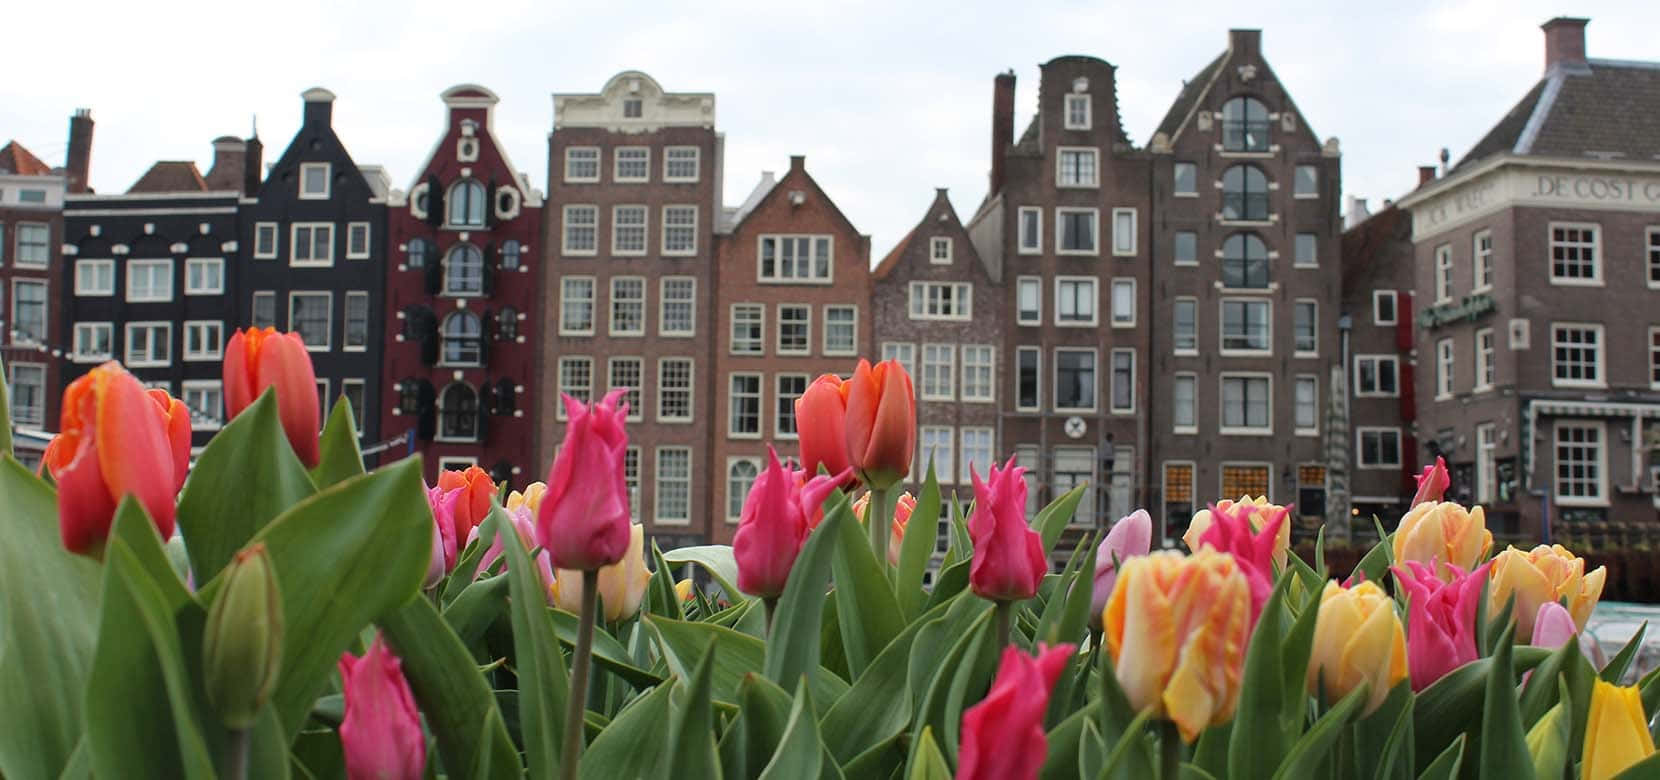 Tulipaner foran bygninger i Amsterdam. Wallpaper